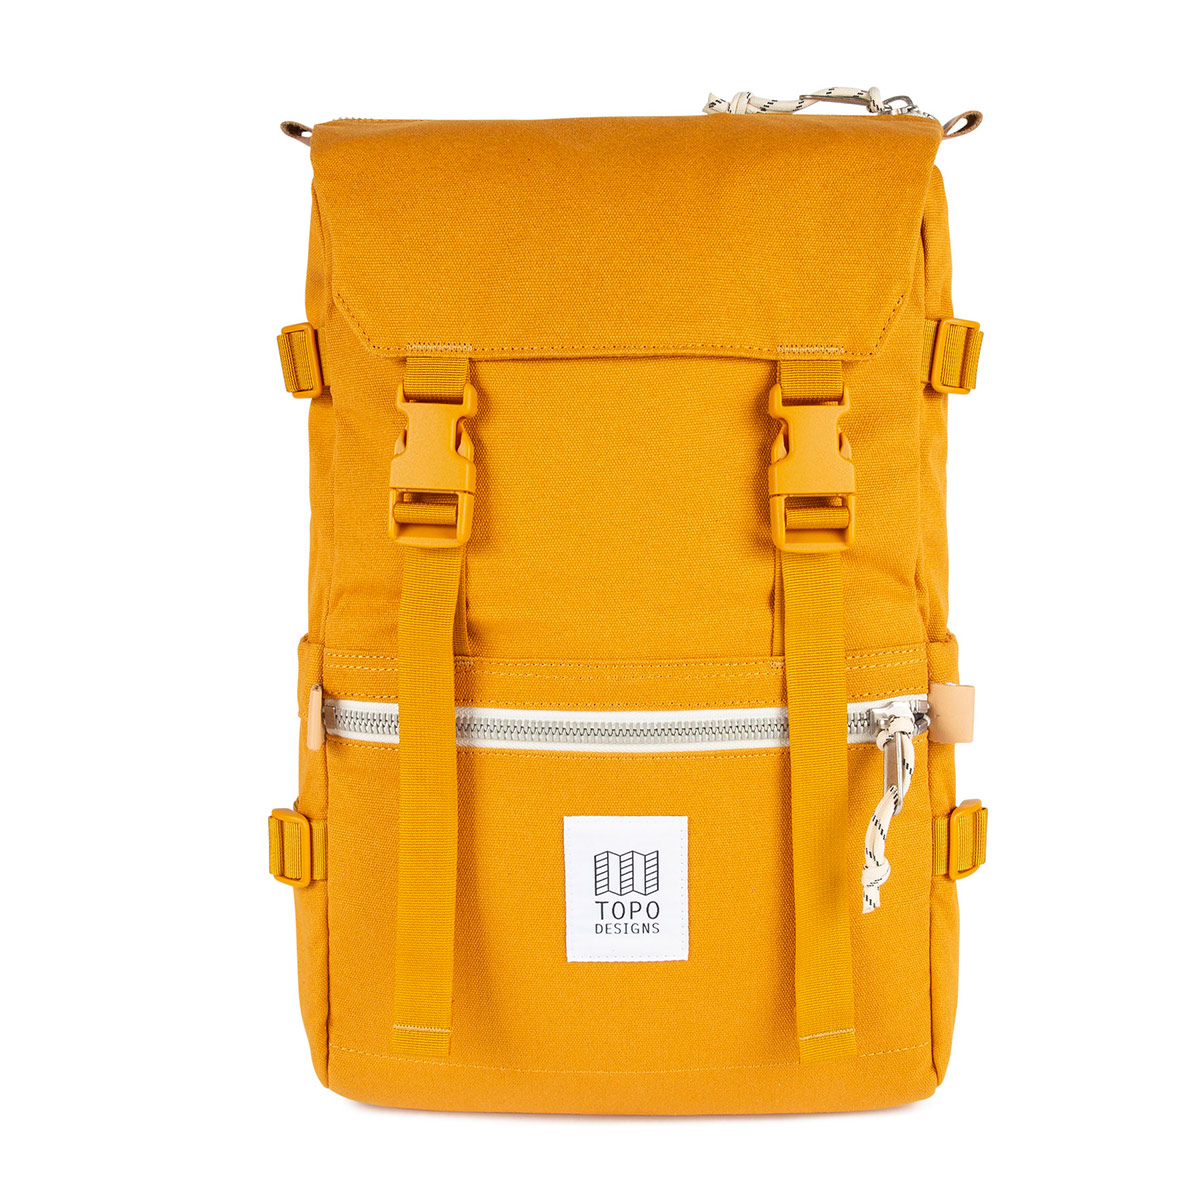 Topo Designs Rover Pack Canvas Mustard, vereint bergsteigerische Robustheit mit urbaner Eleganz.